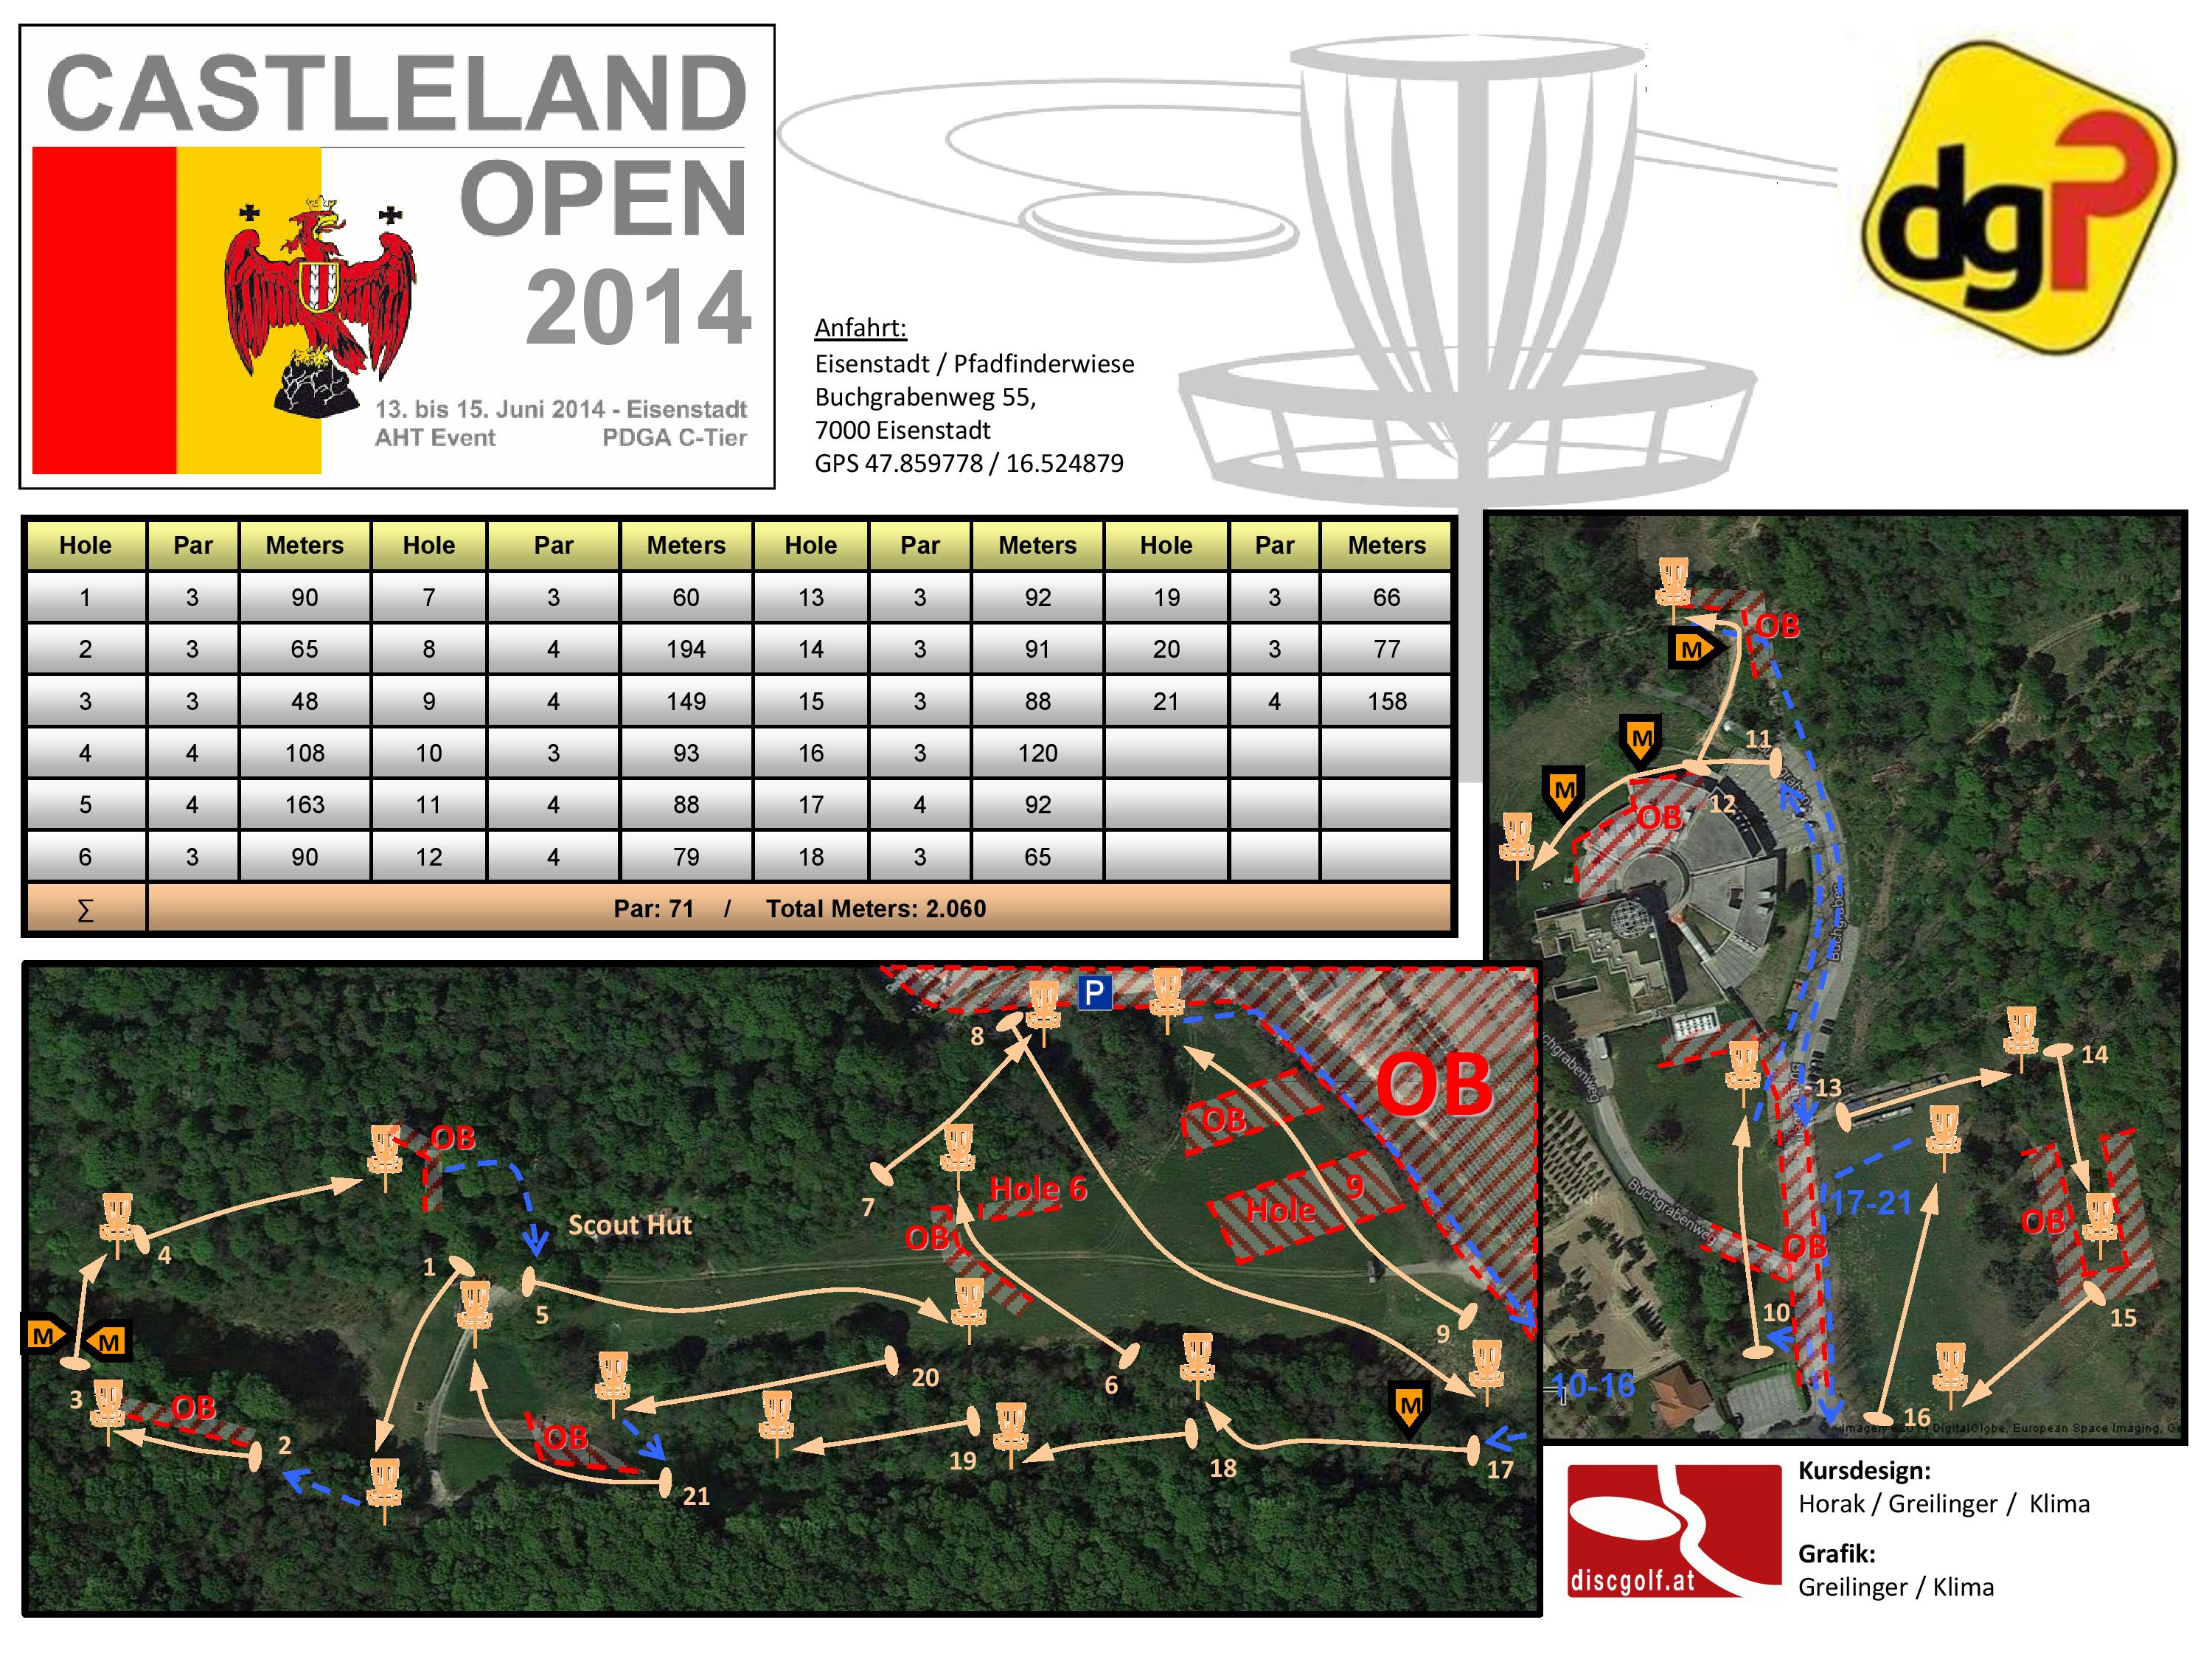 Parcoursplan Castleland Open 2014